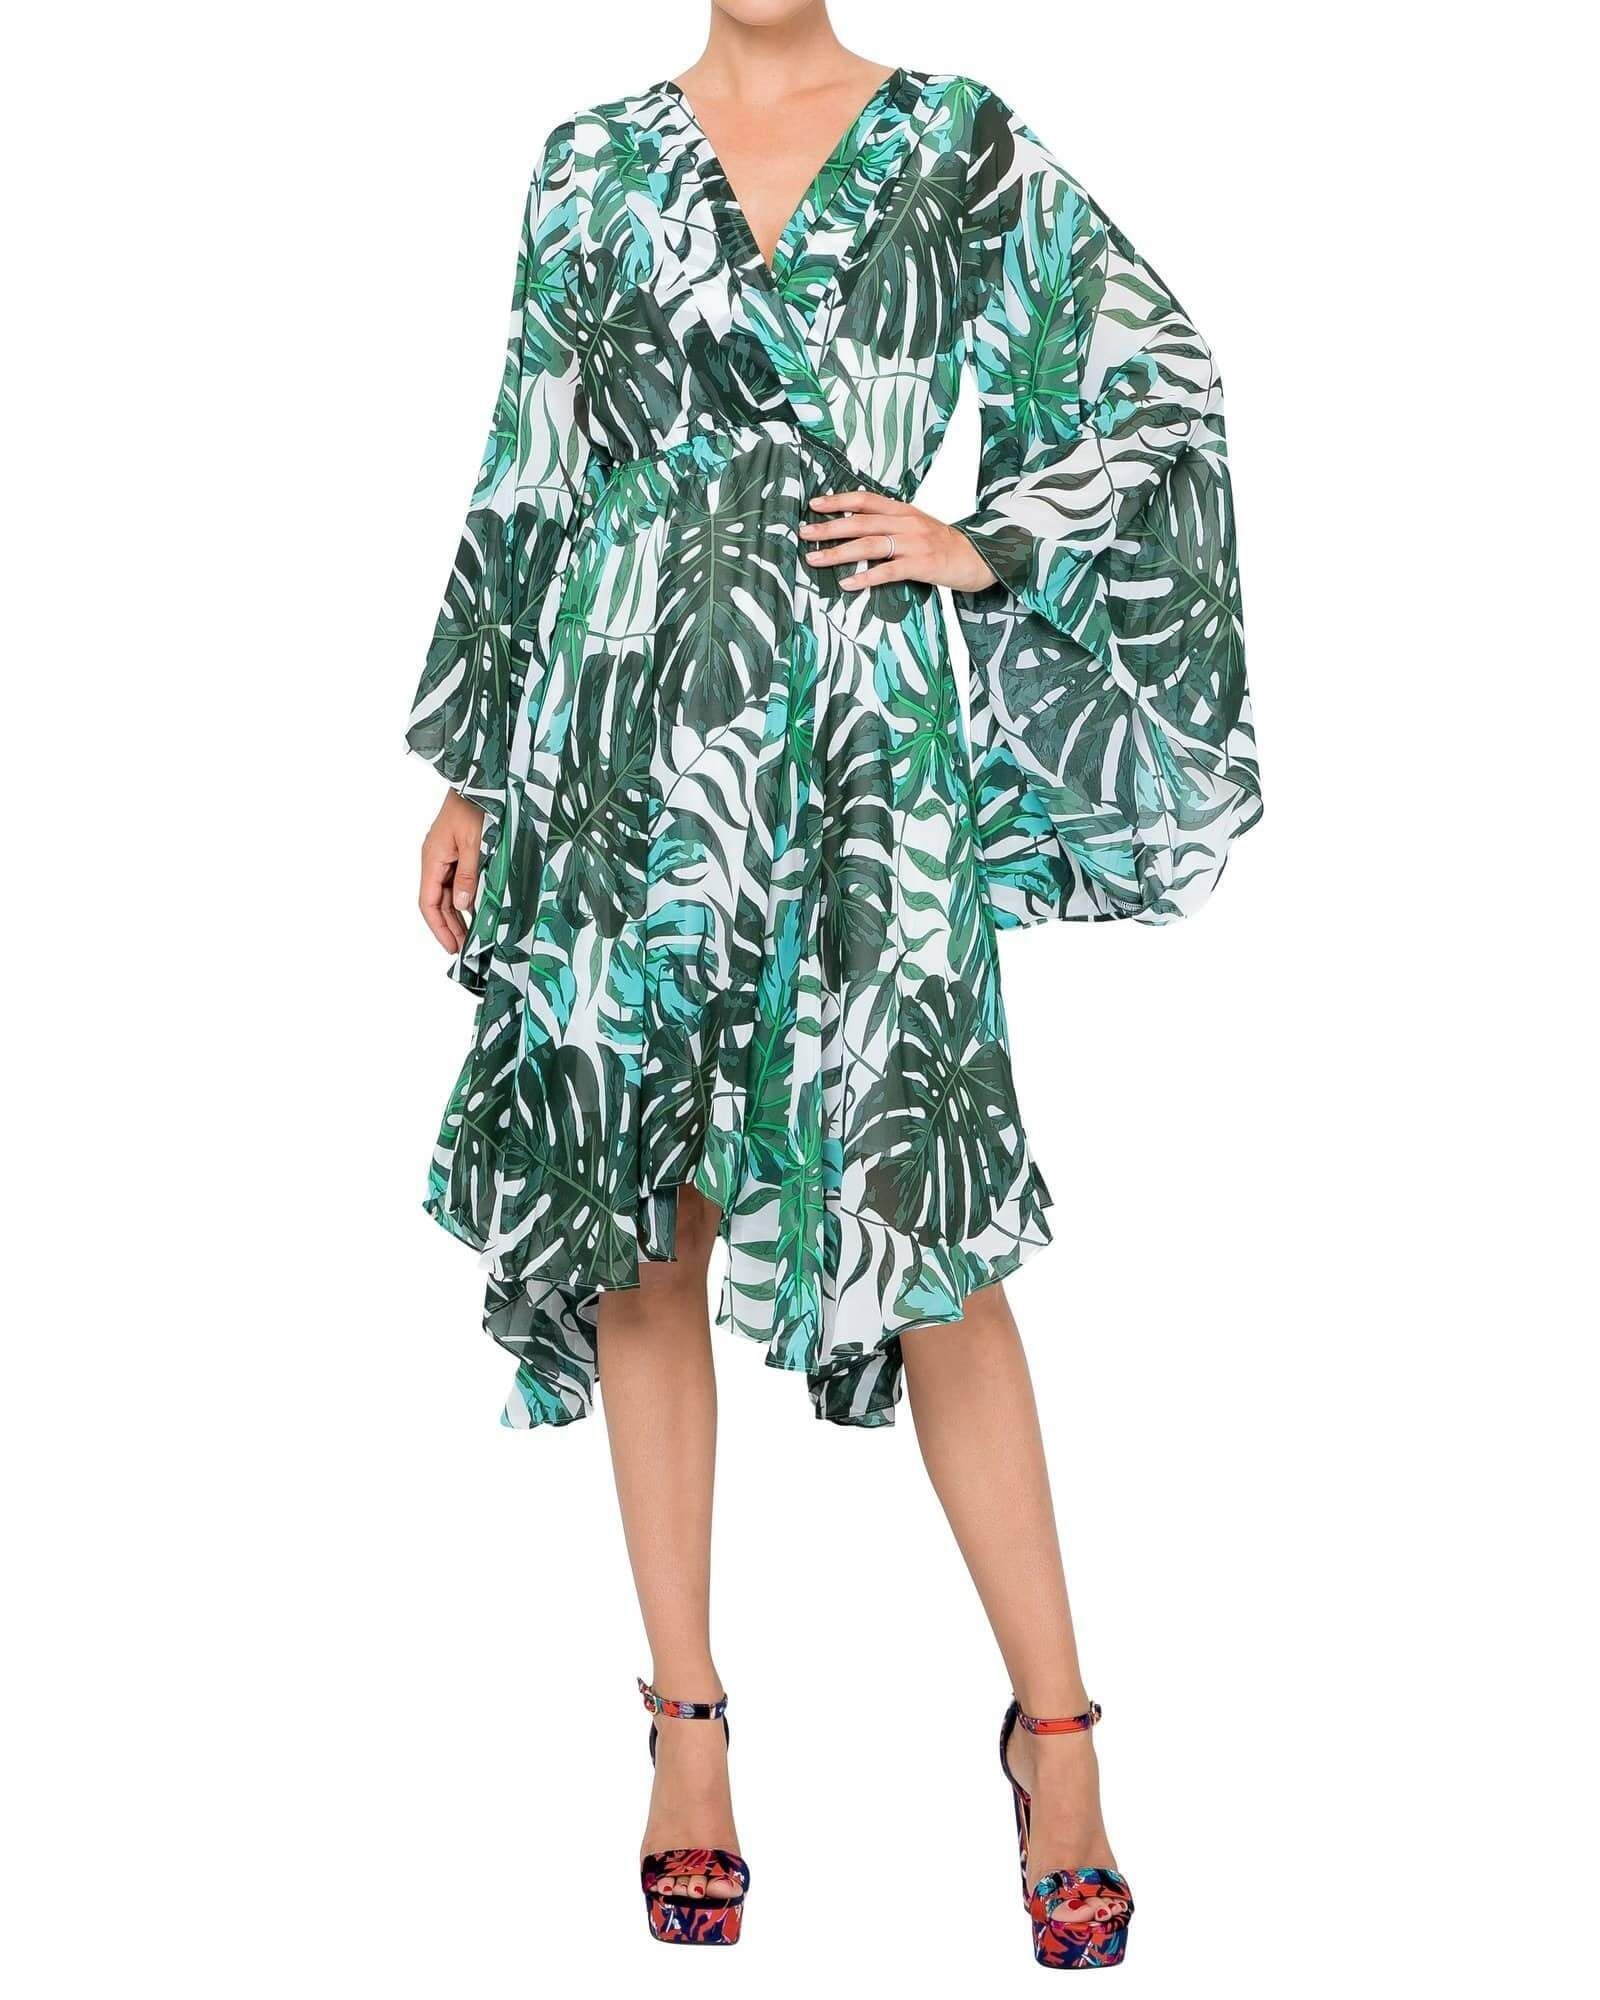 Sunset Dress - Palm Beach Green - BTK COLLECTION